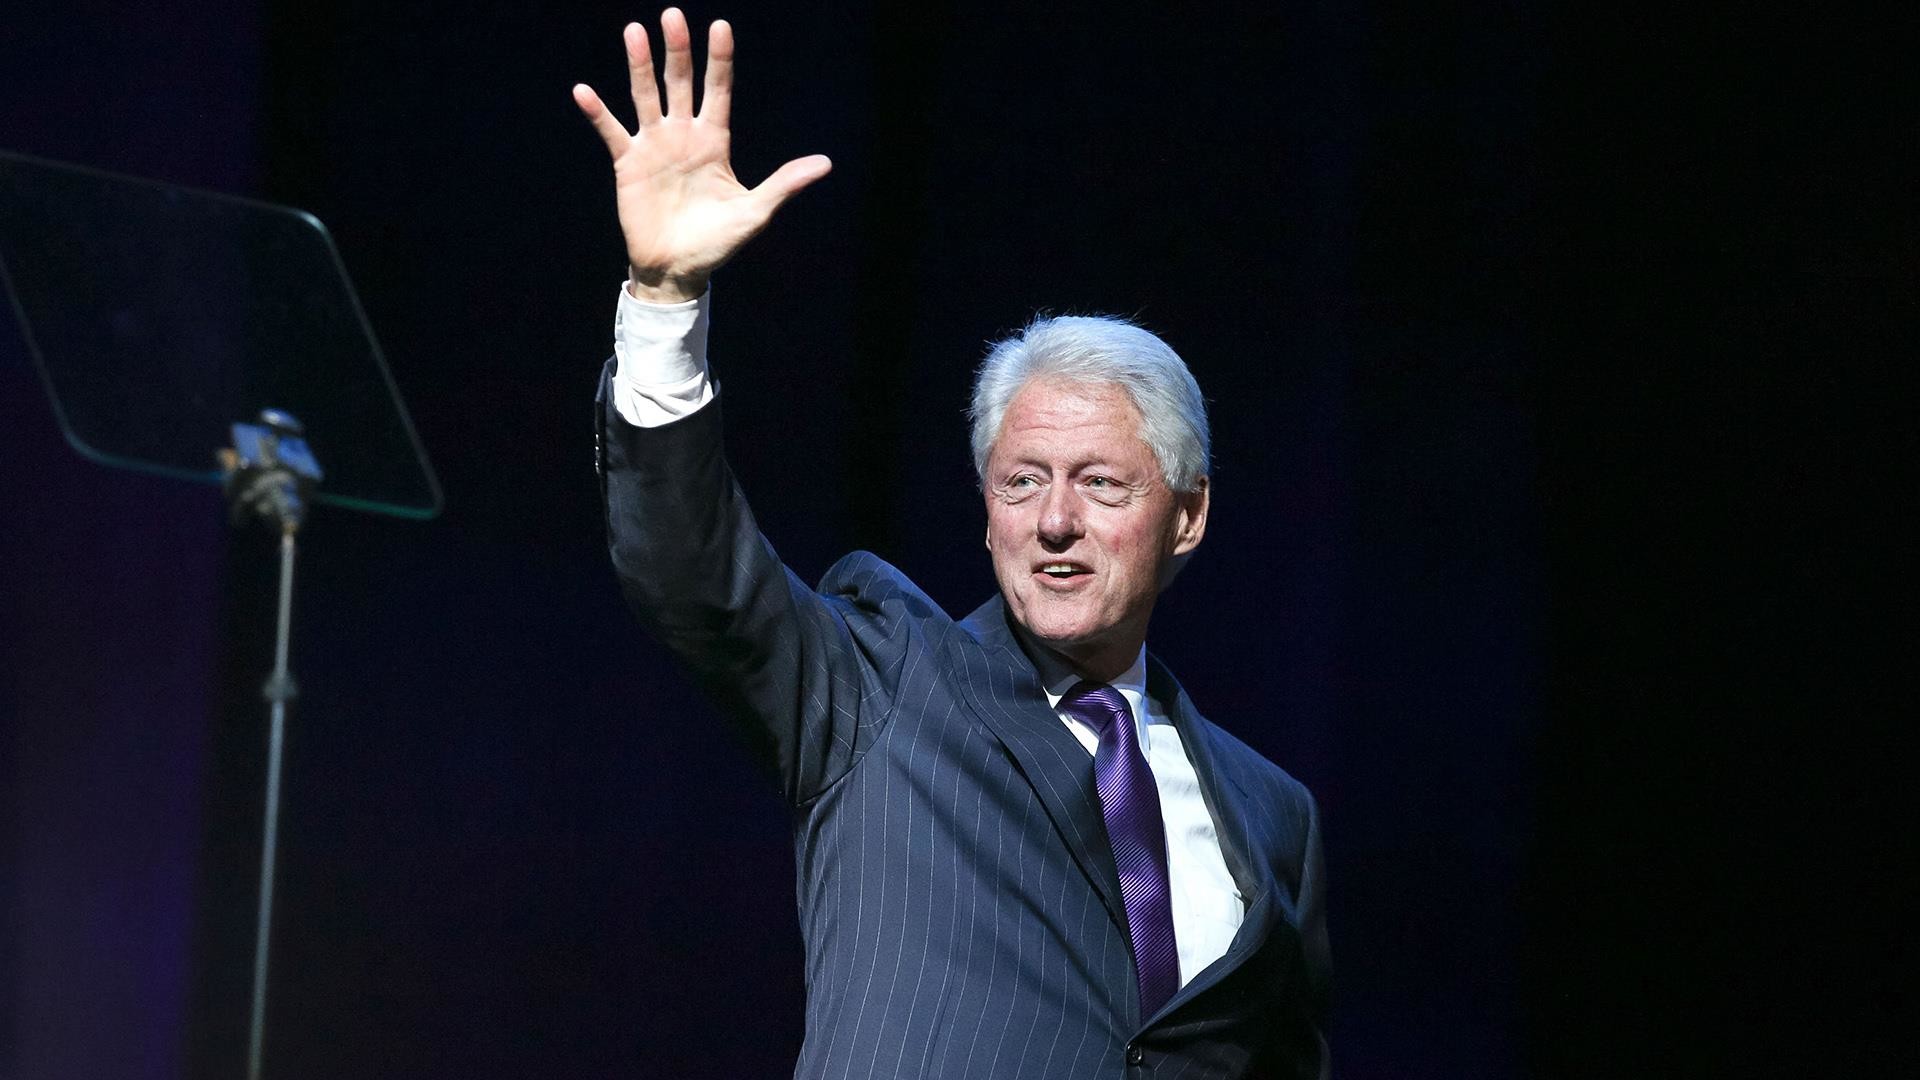 Bill Klintondan İran xalqlarına mesaj: “Azadlığa qədər yanınızdayıq”